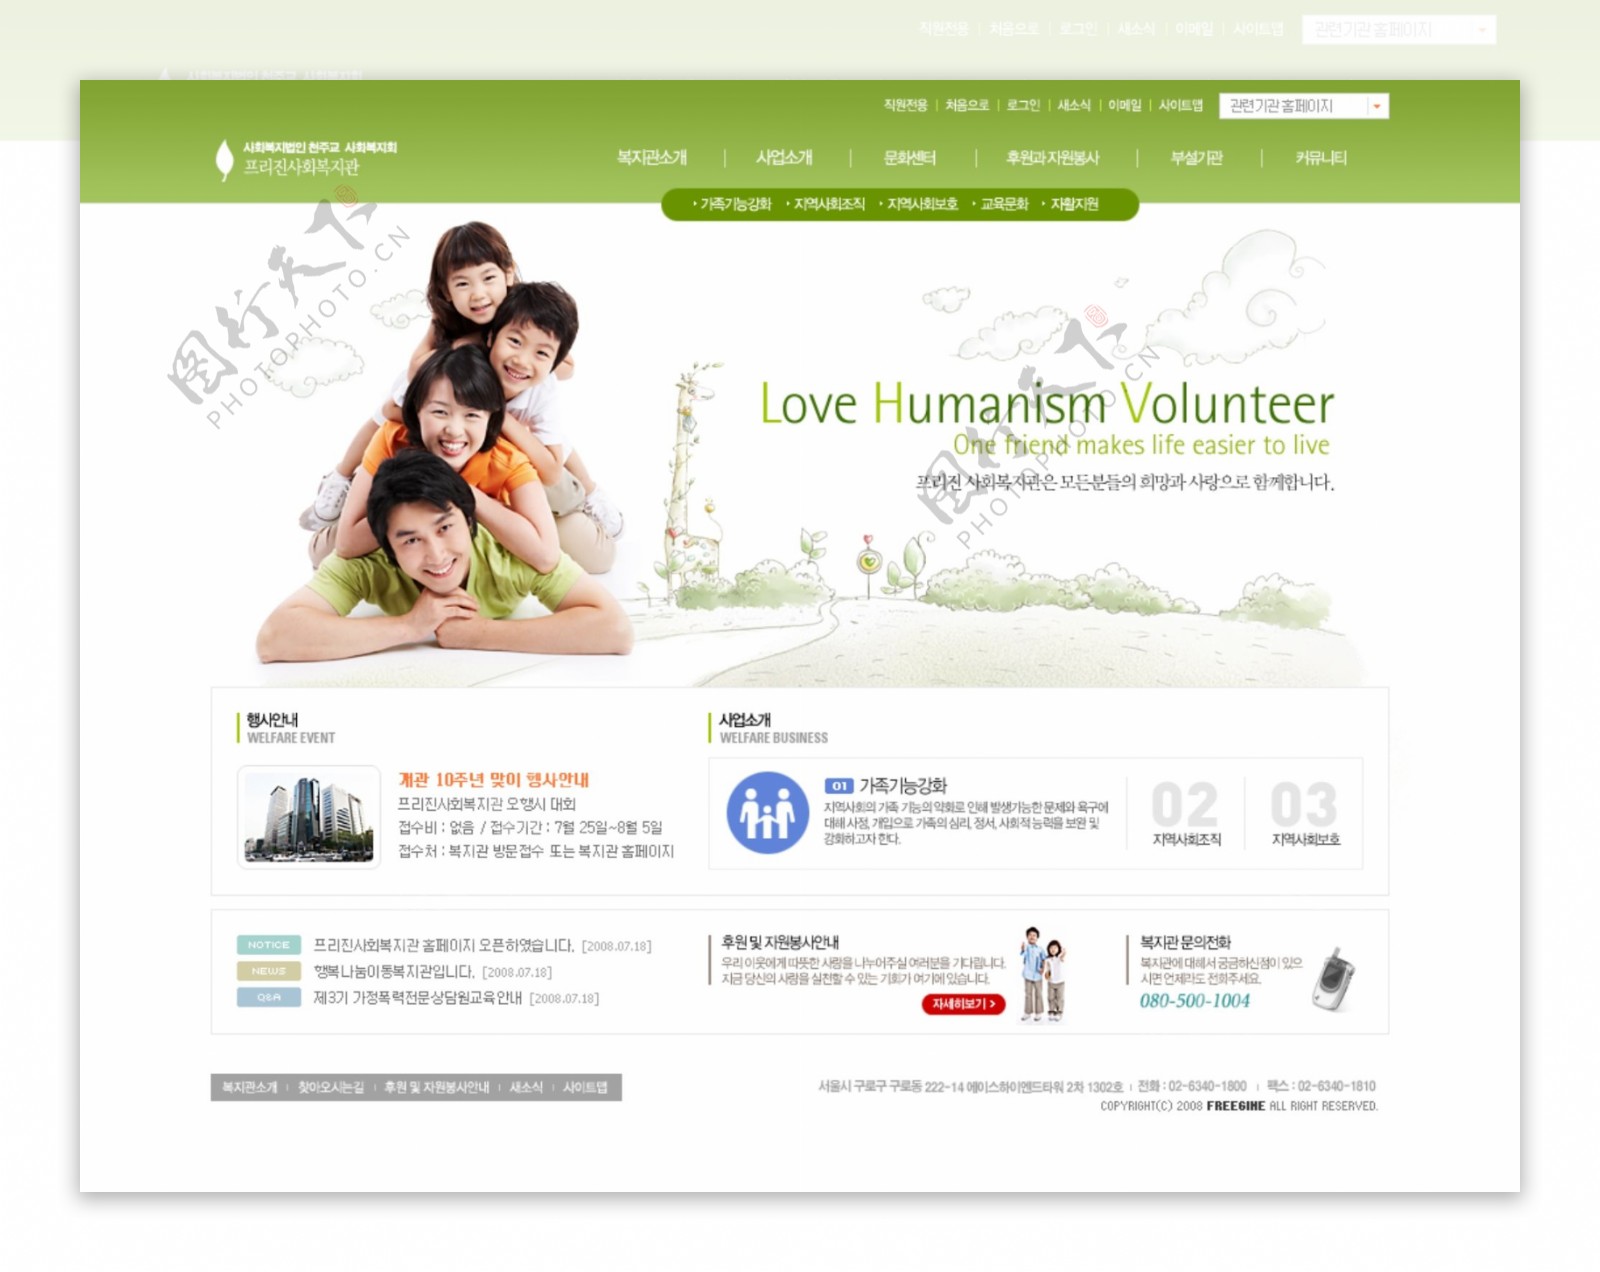 绿色网页模板图片